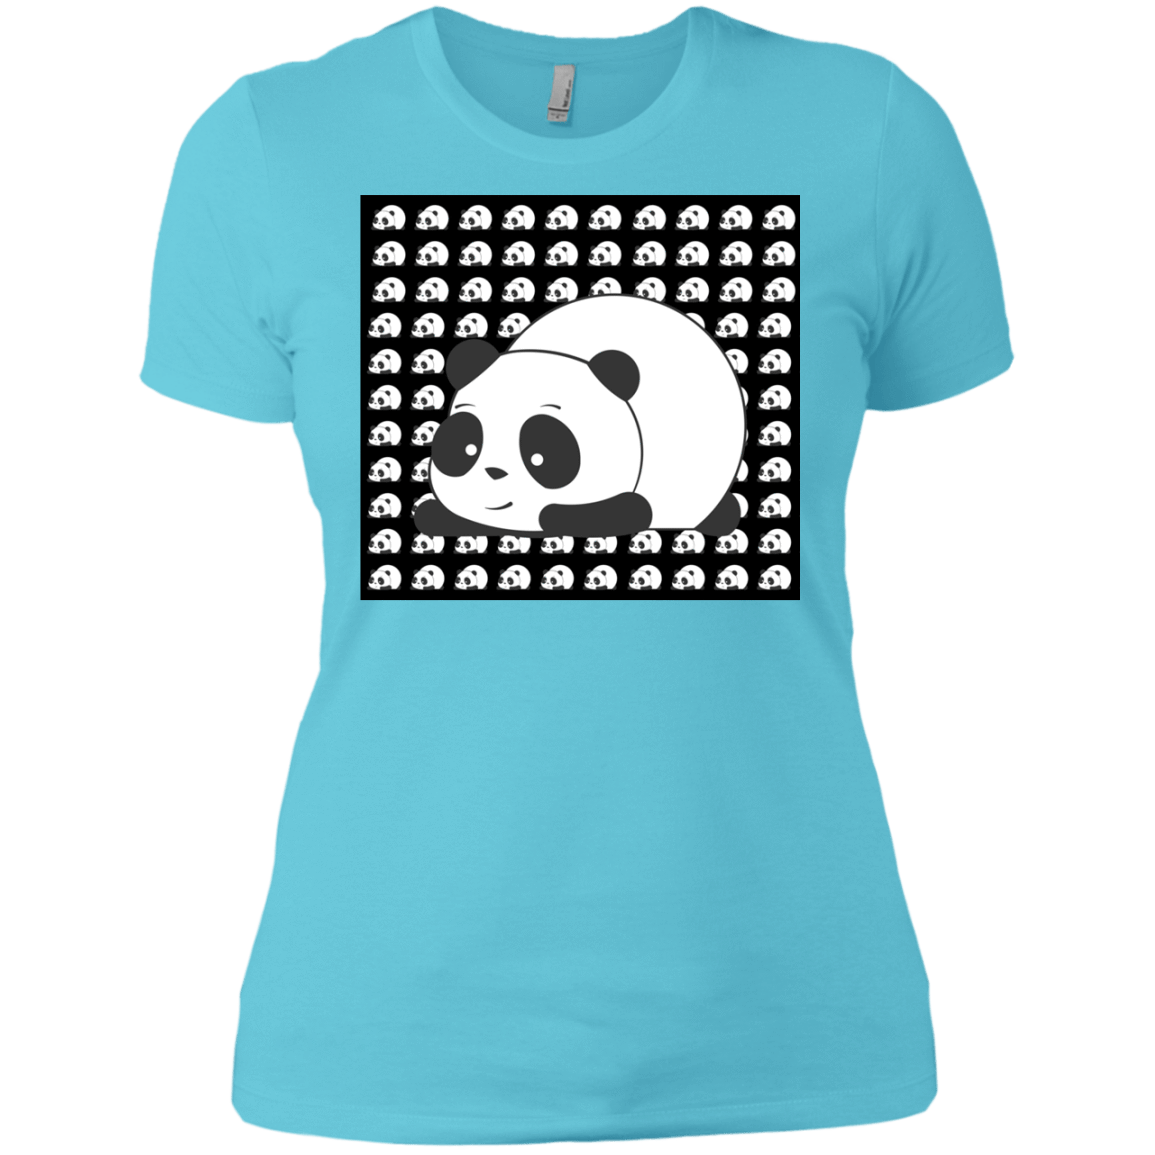 T-Shirts Cancun / X-Small Panda Women's Premium T-Shirt